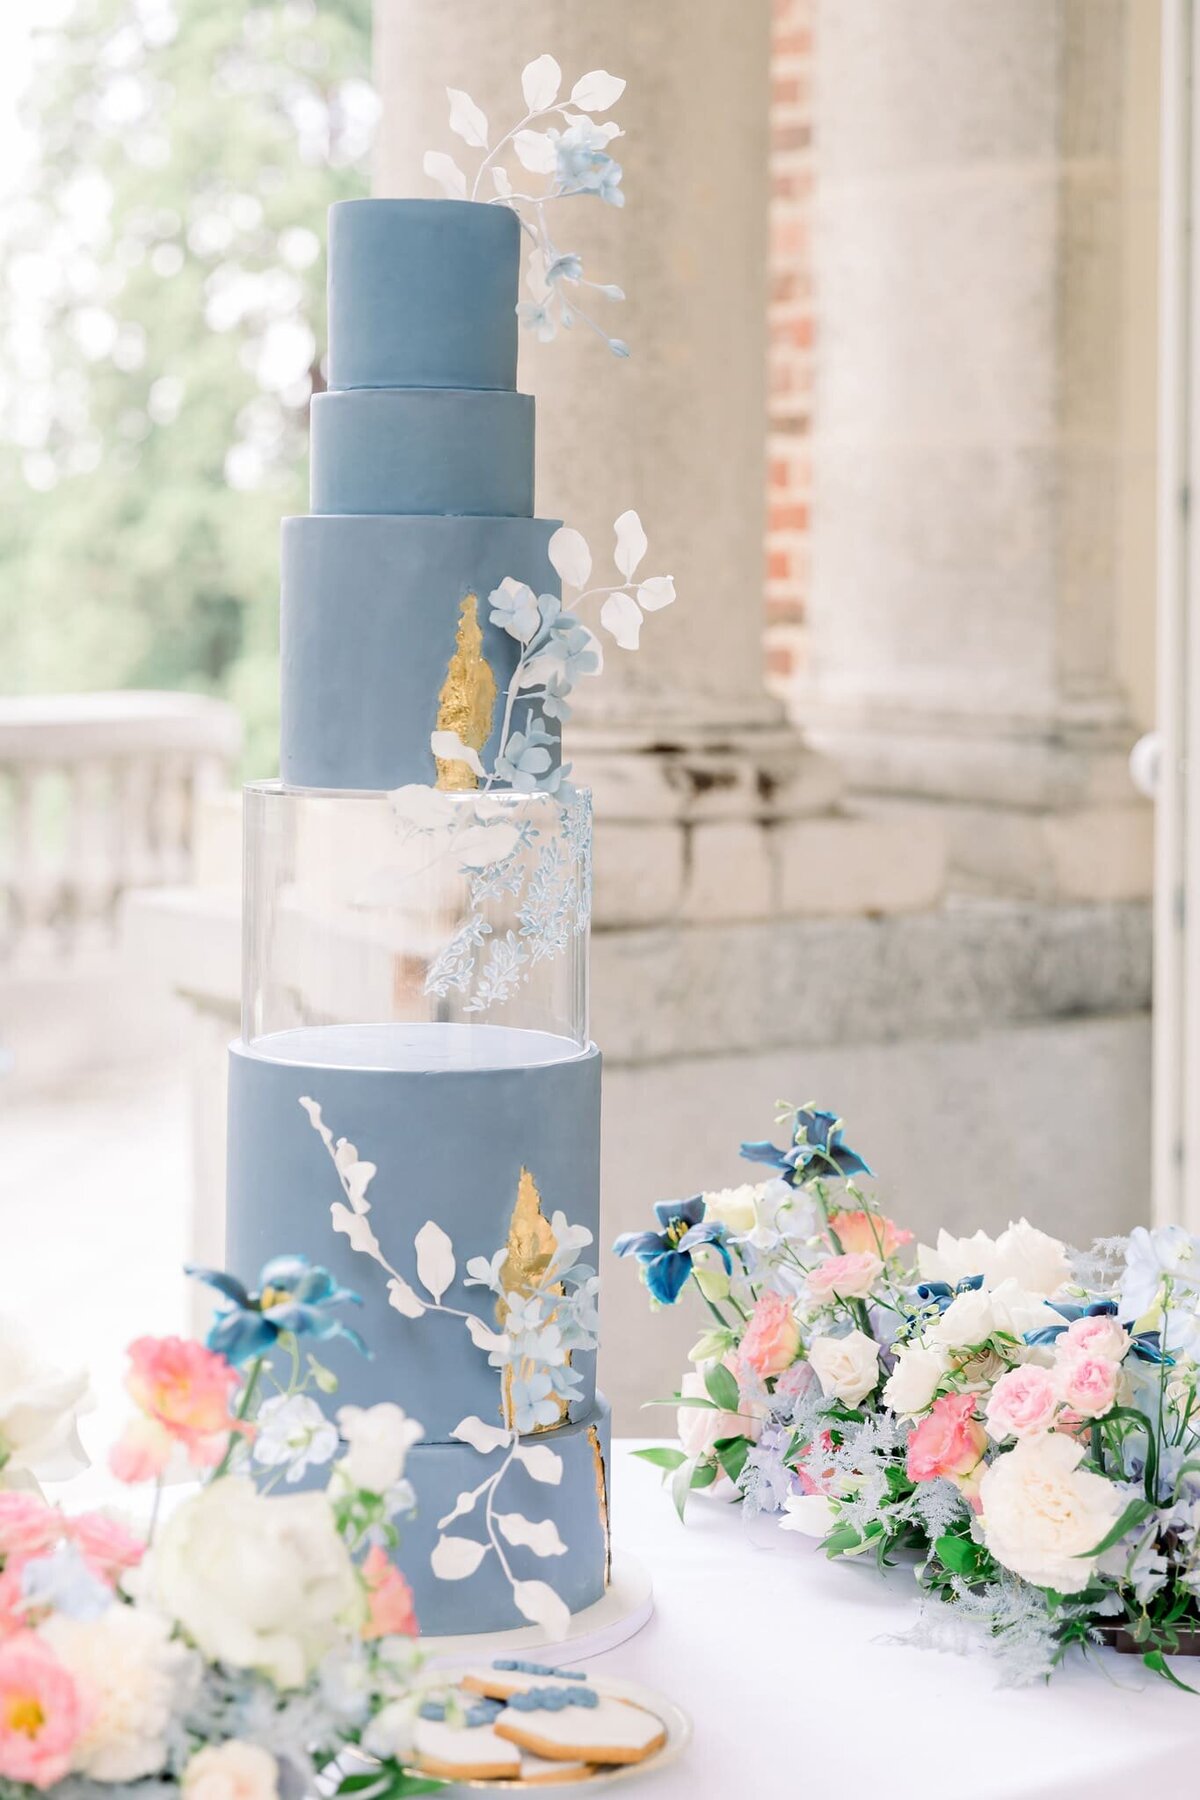 cake-design-wedding-nuances-bleus-et-fleurs-delicates